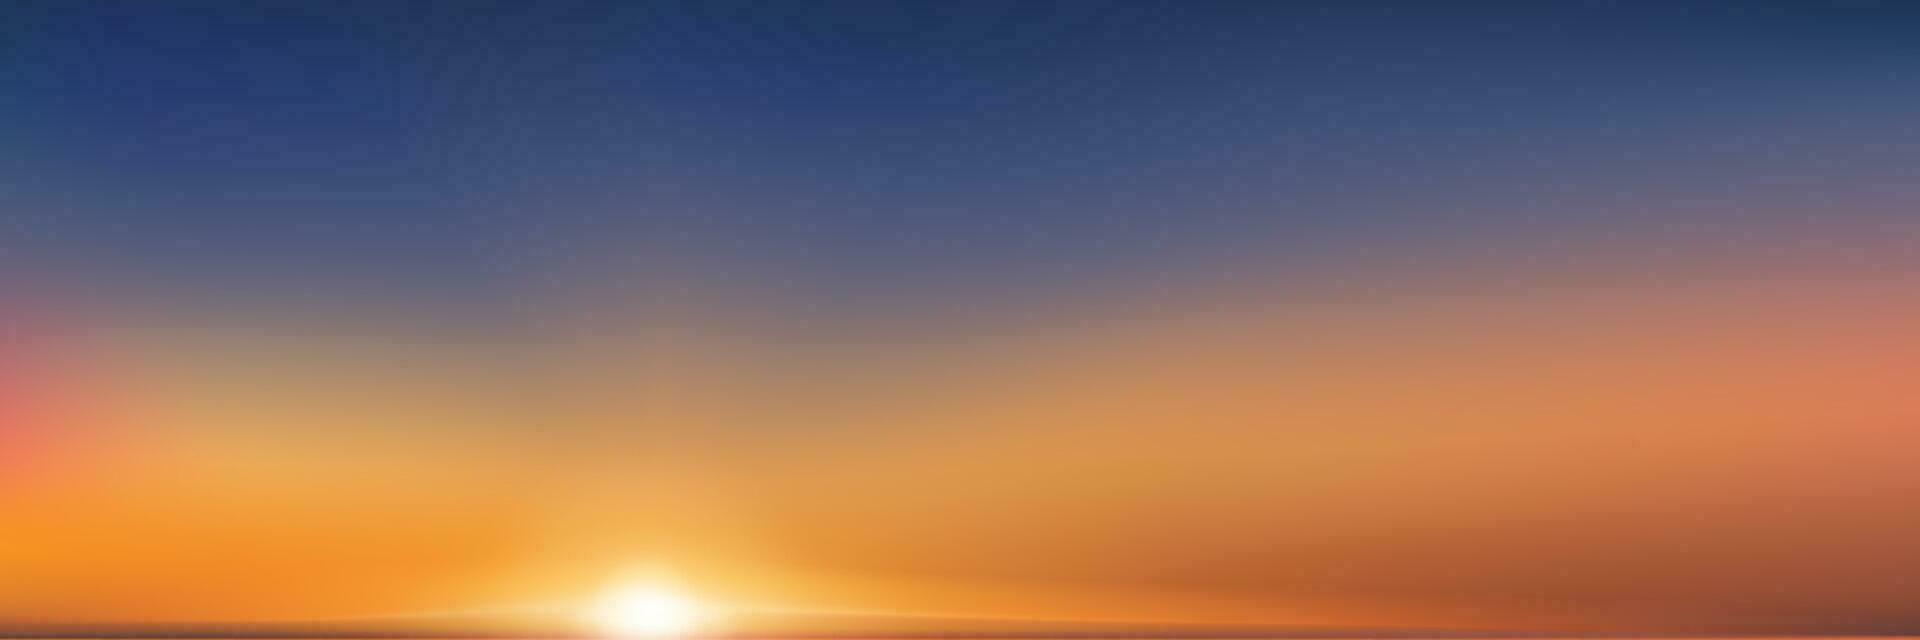 zomer zonsondergang lucht door de zee met reflectie, zonsopgang met oranje, geel, blauw; lucht, natuur landschap gouden uur met schemering schemer lucht in avond na zon dageraad, vector horizontaal banier zonlicht